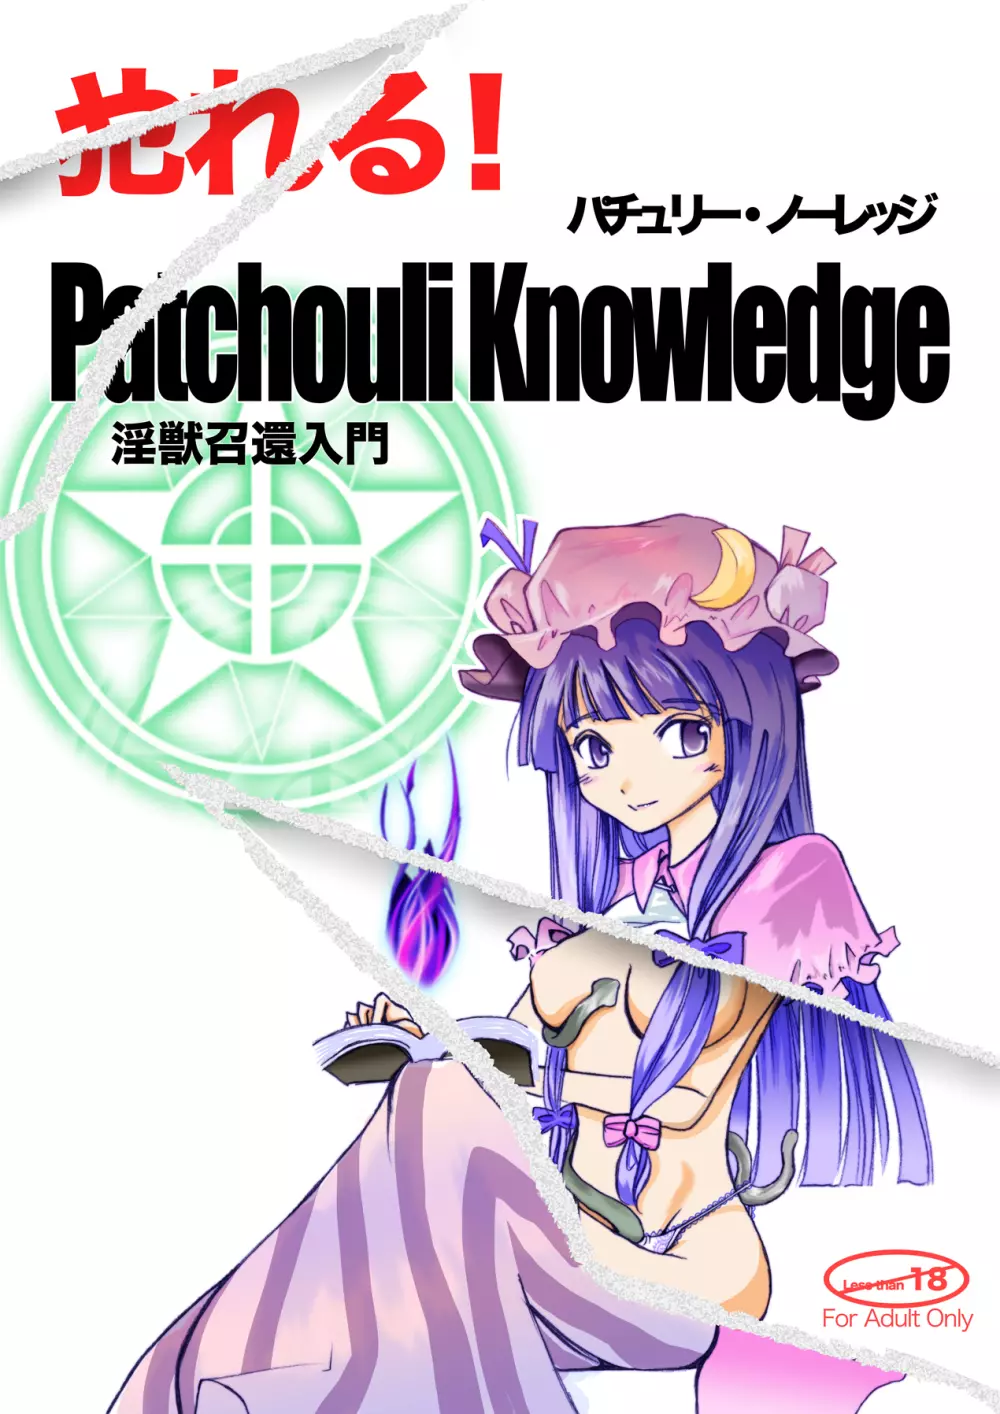 Yareru! Patchouli knowledge